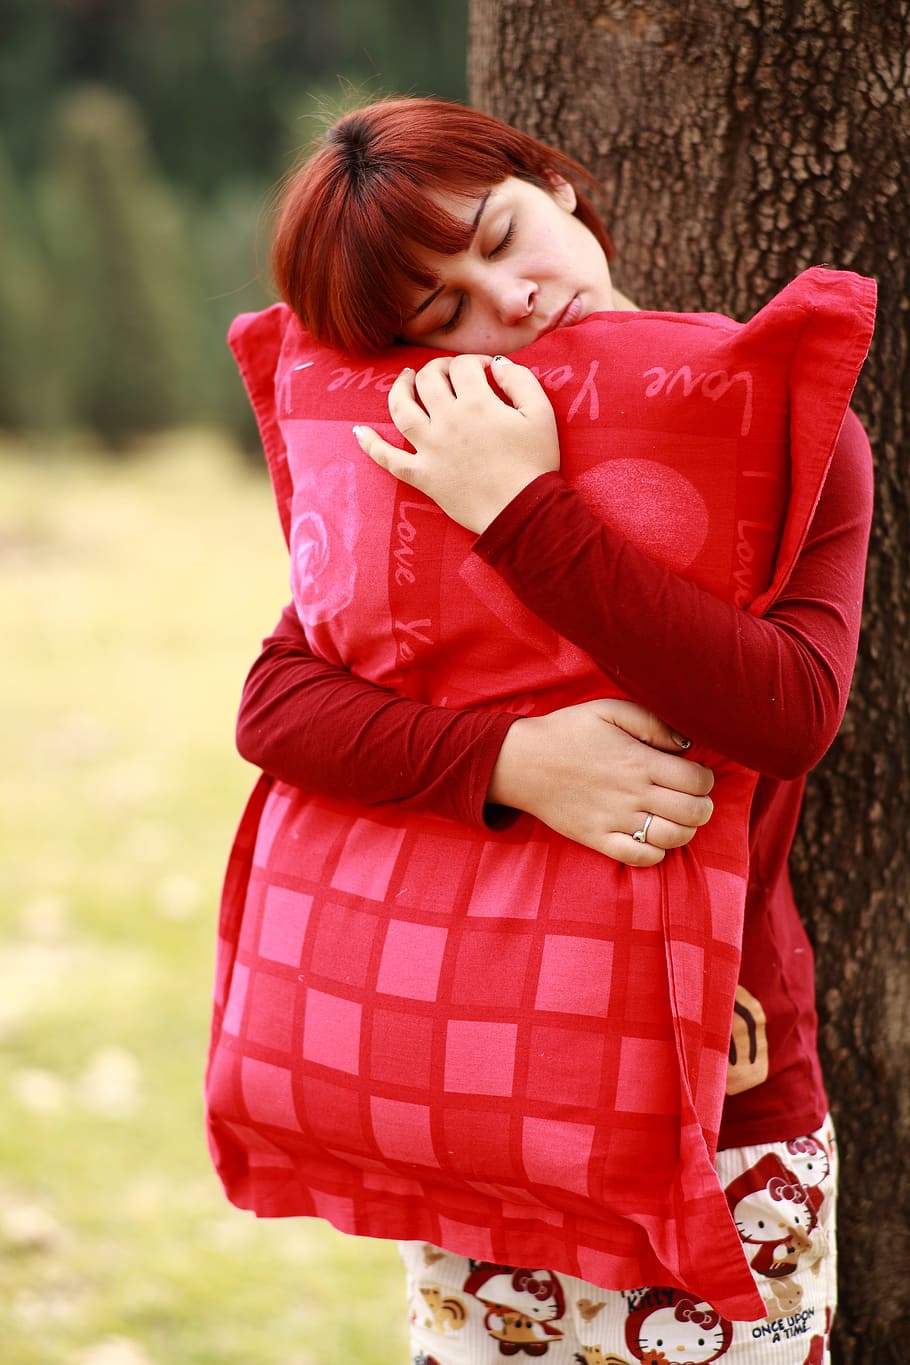 wanita, memeluk, merah, bantal, di samping, pohon, siang hari, tidur, berjalan sambil tidur, potret